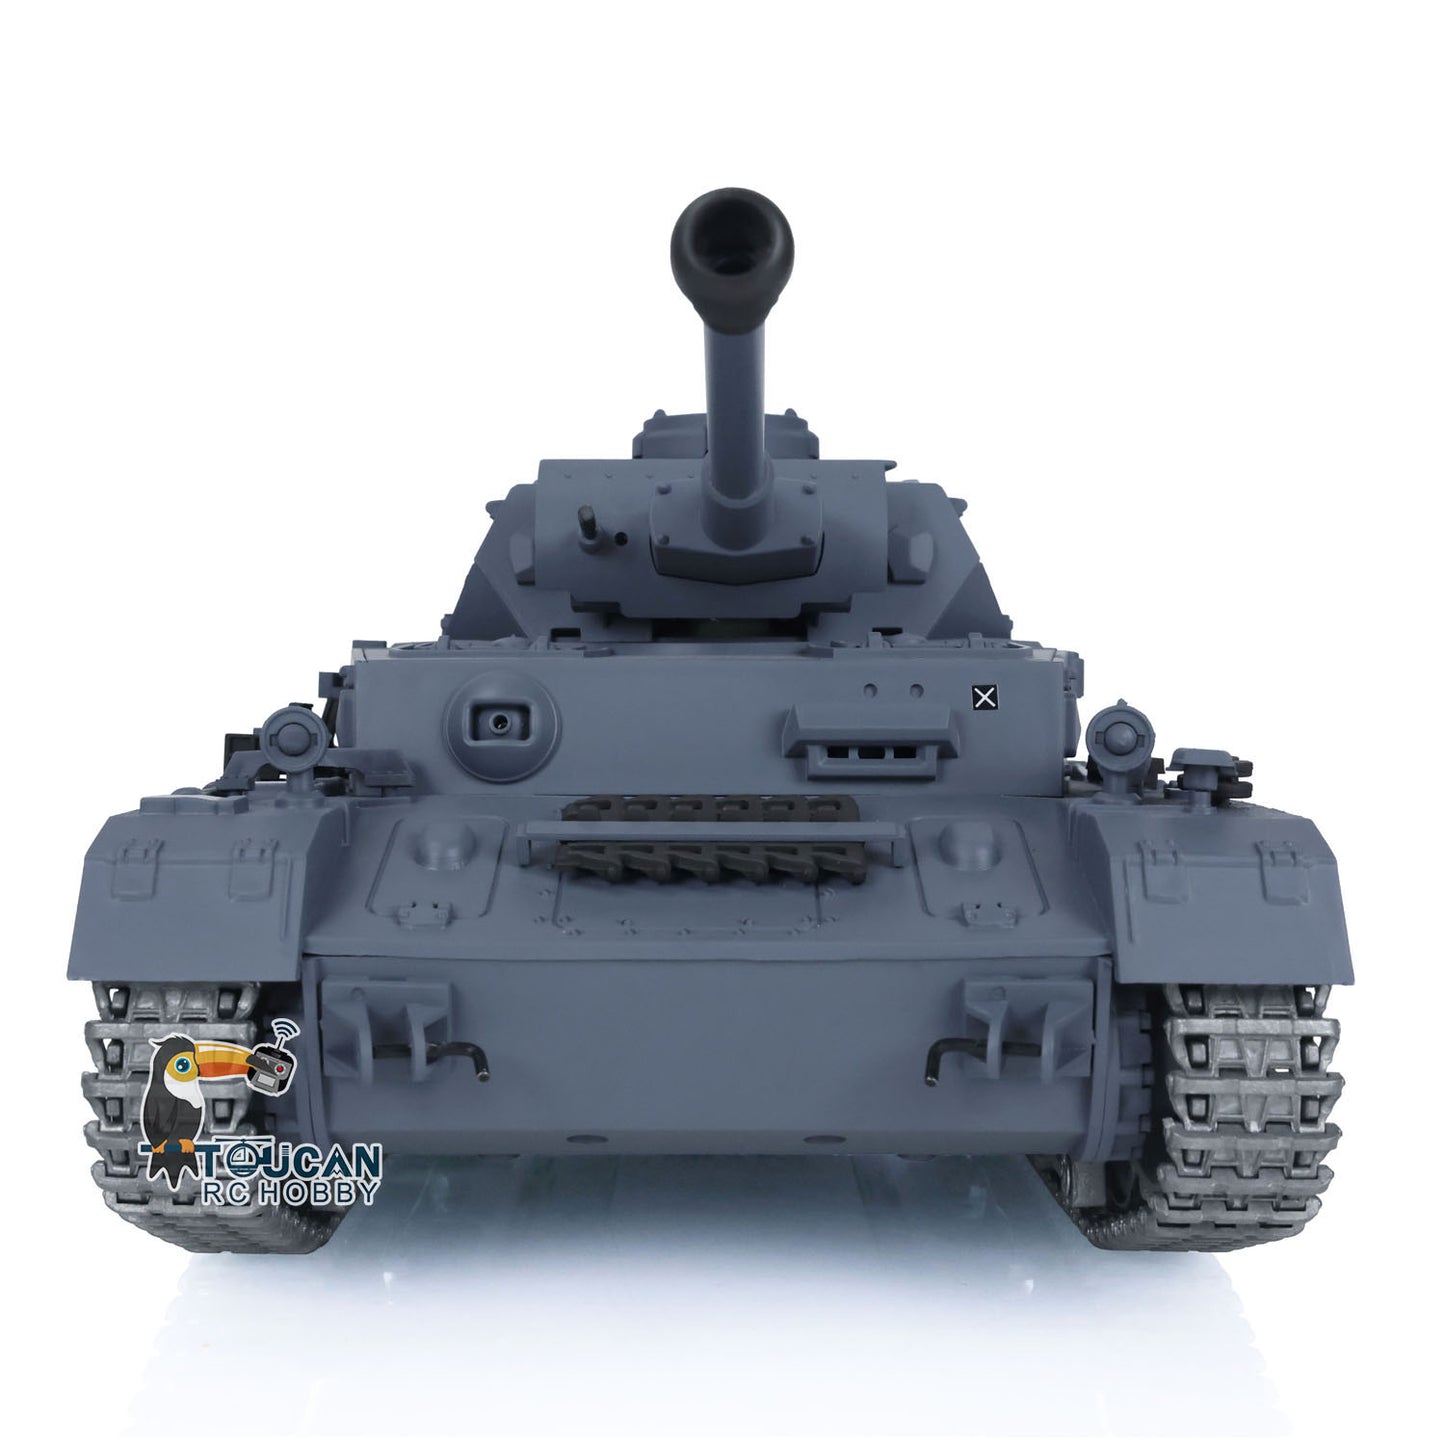 Henglong 1/16 TK7.0 Upgraded German Panzer IV F2 RTR RC Tank 3859 w/ Metal Tracks Idler Sprocket Wheels Smoking Gearbox Sound Effect